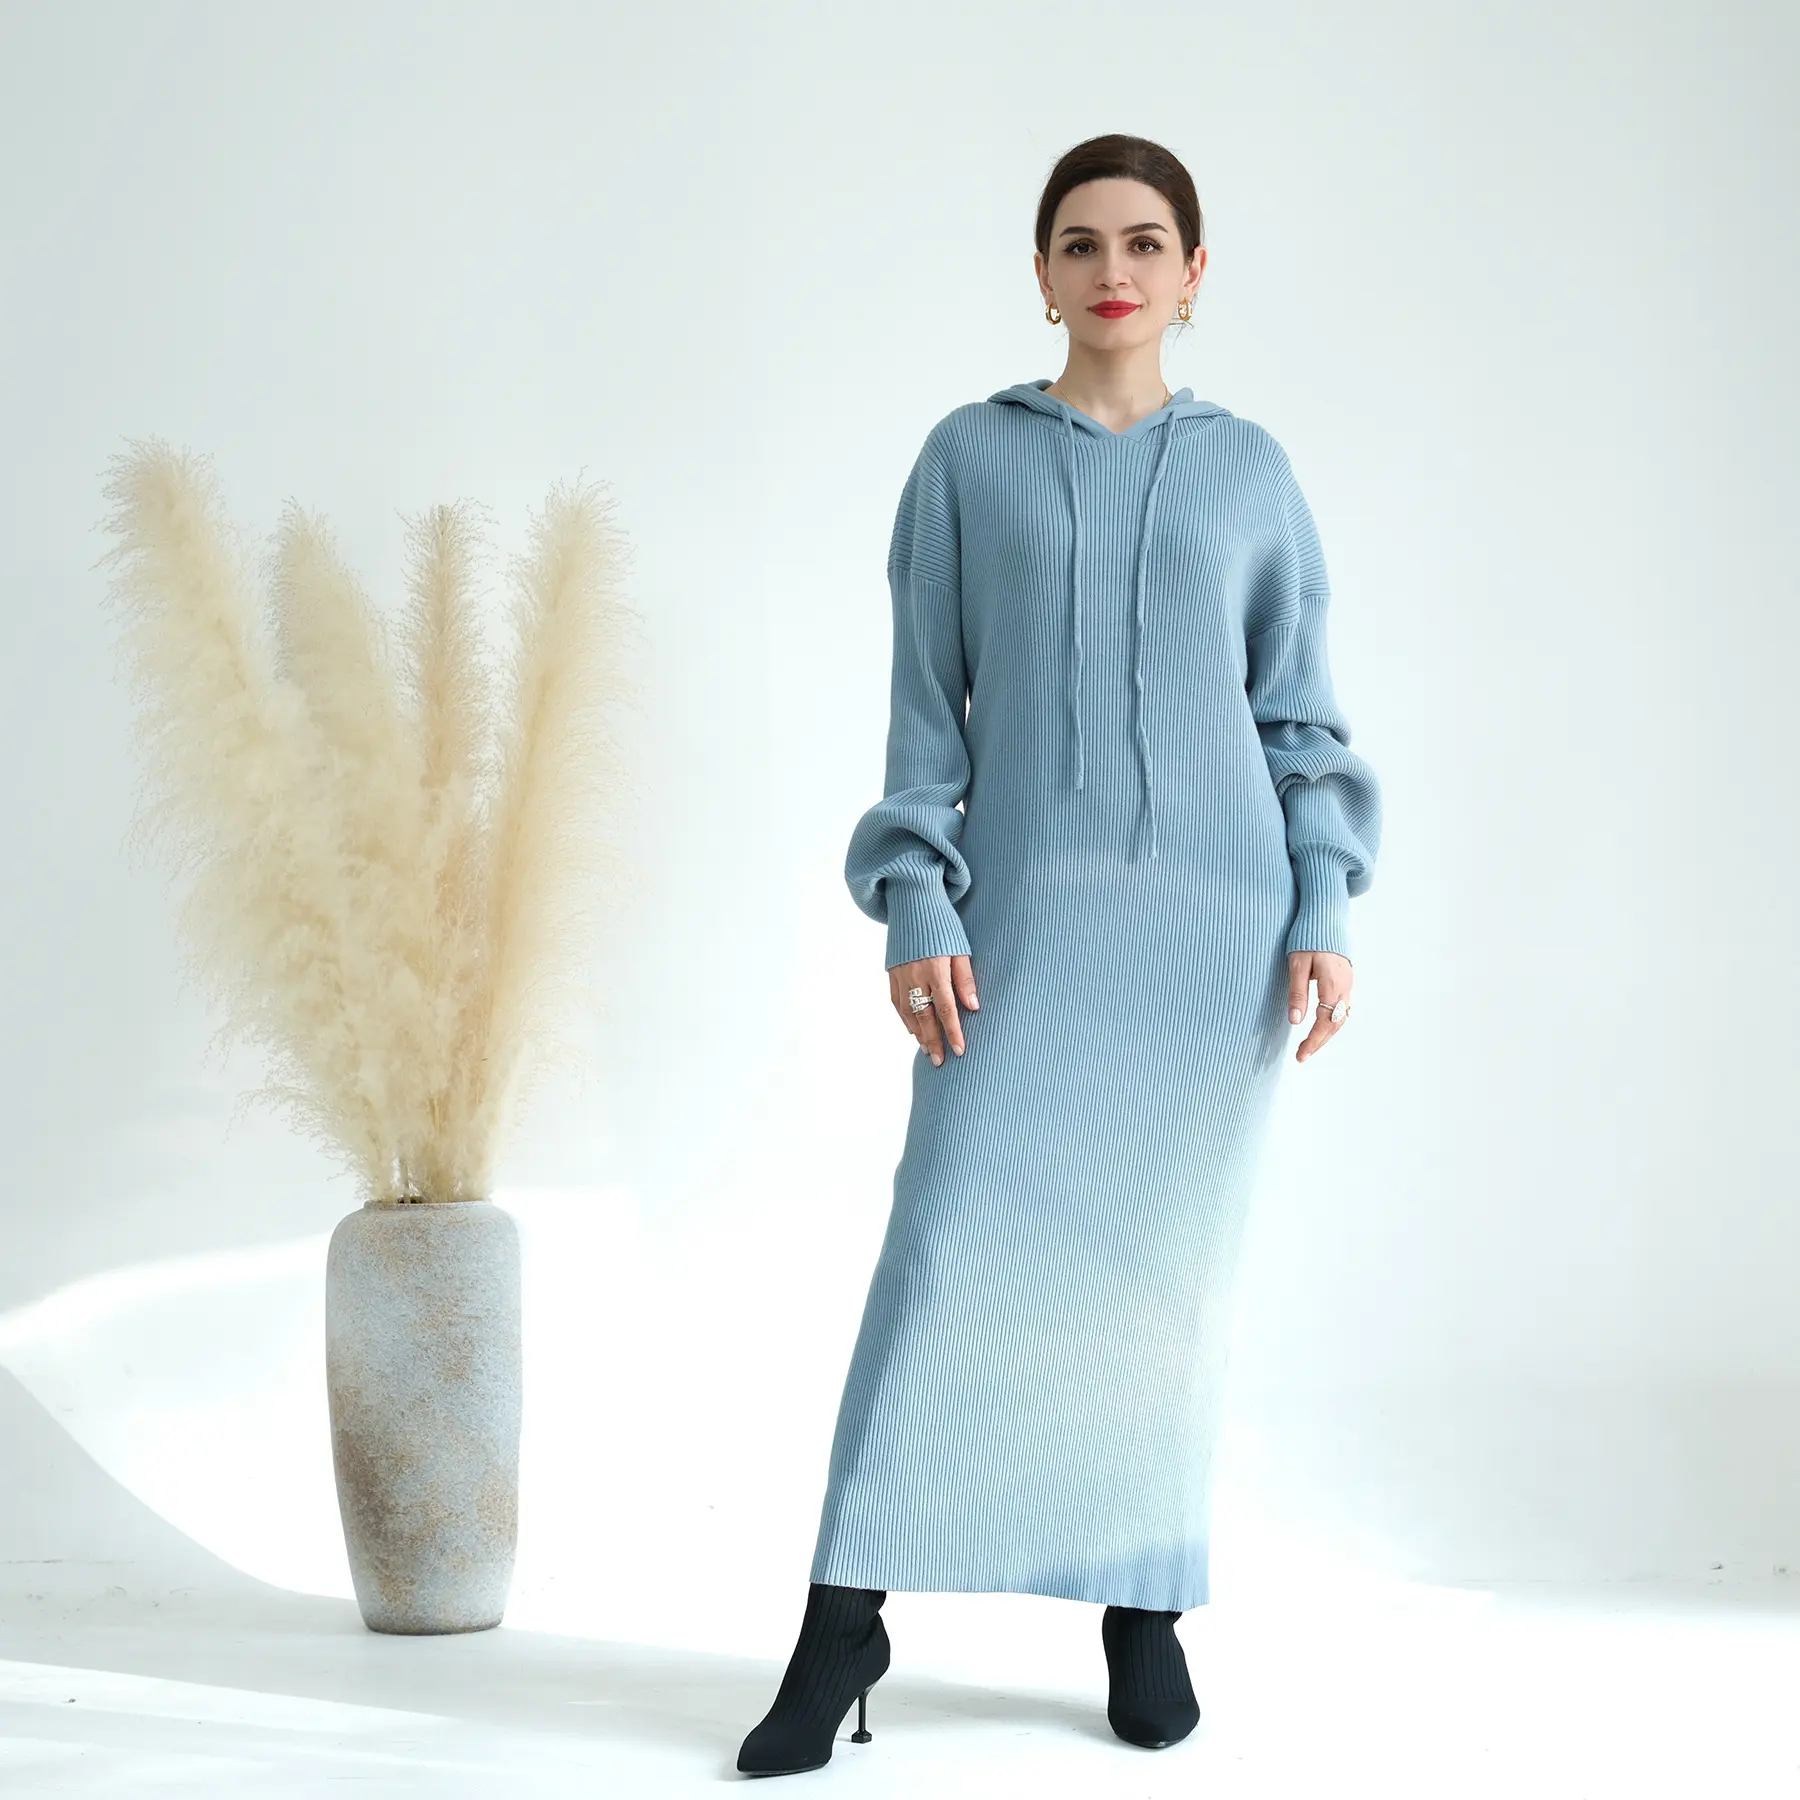 Neueste Design Dubai Malaysia Naher Osten Herbst/Winter Dick gestrickt Lose muslimische Pullover Kleid Frauen